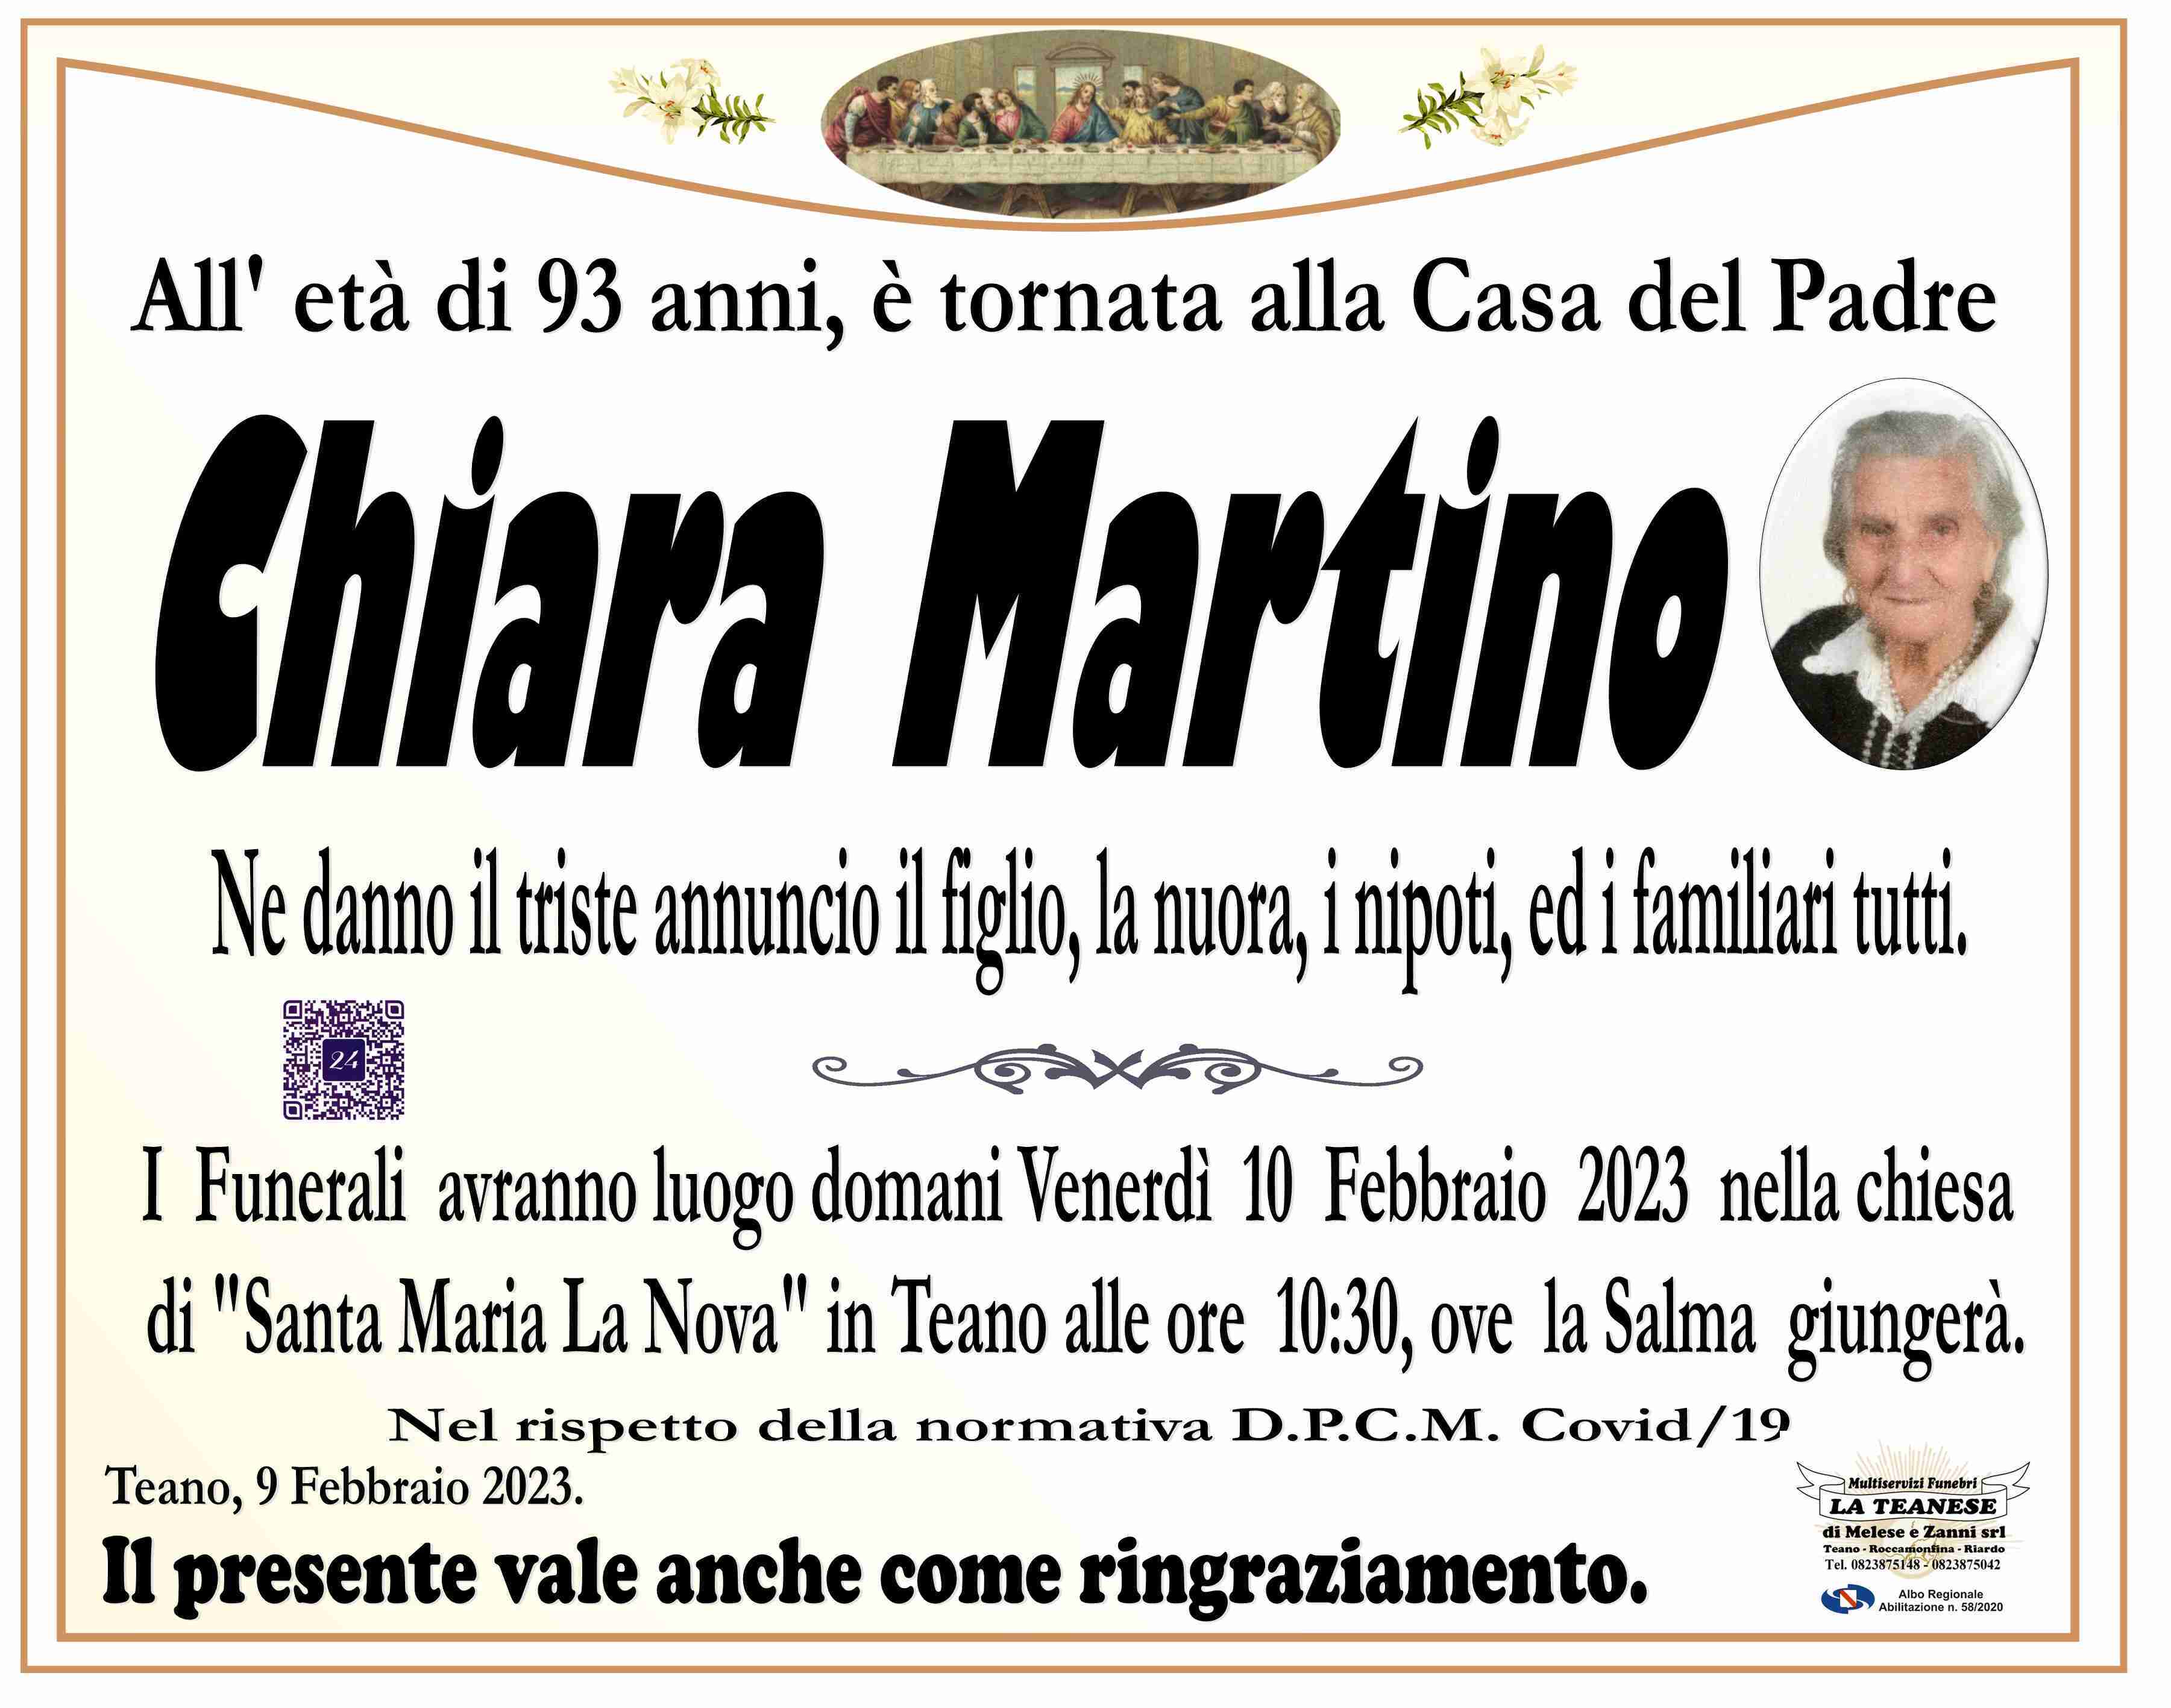 Chiara Martino